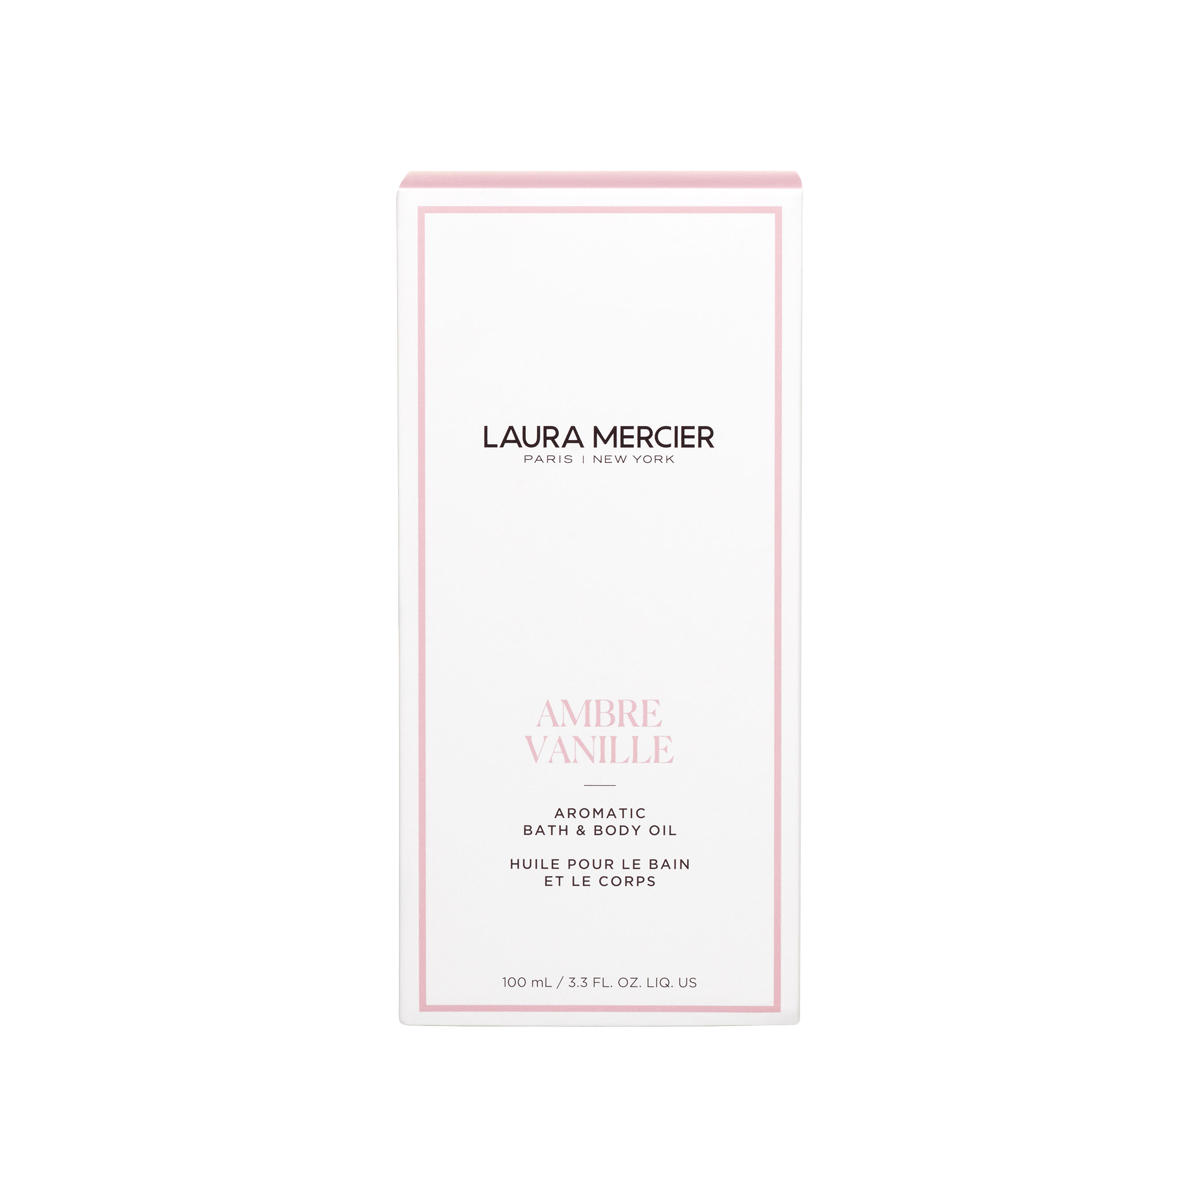 Laura Mercier - Ambre Vanille Bath & Body Oil